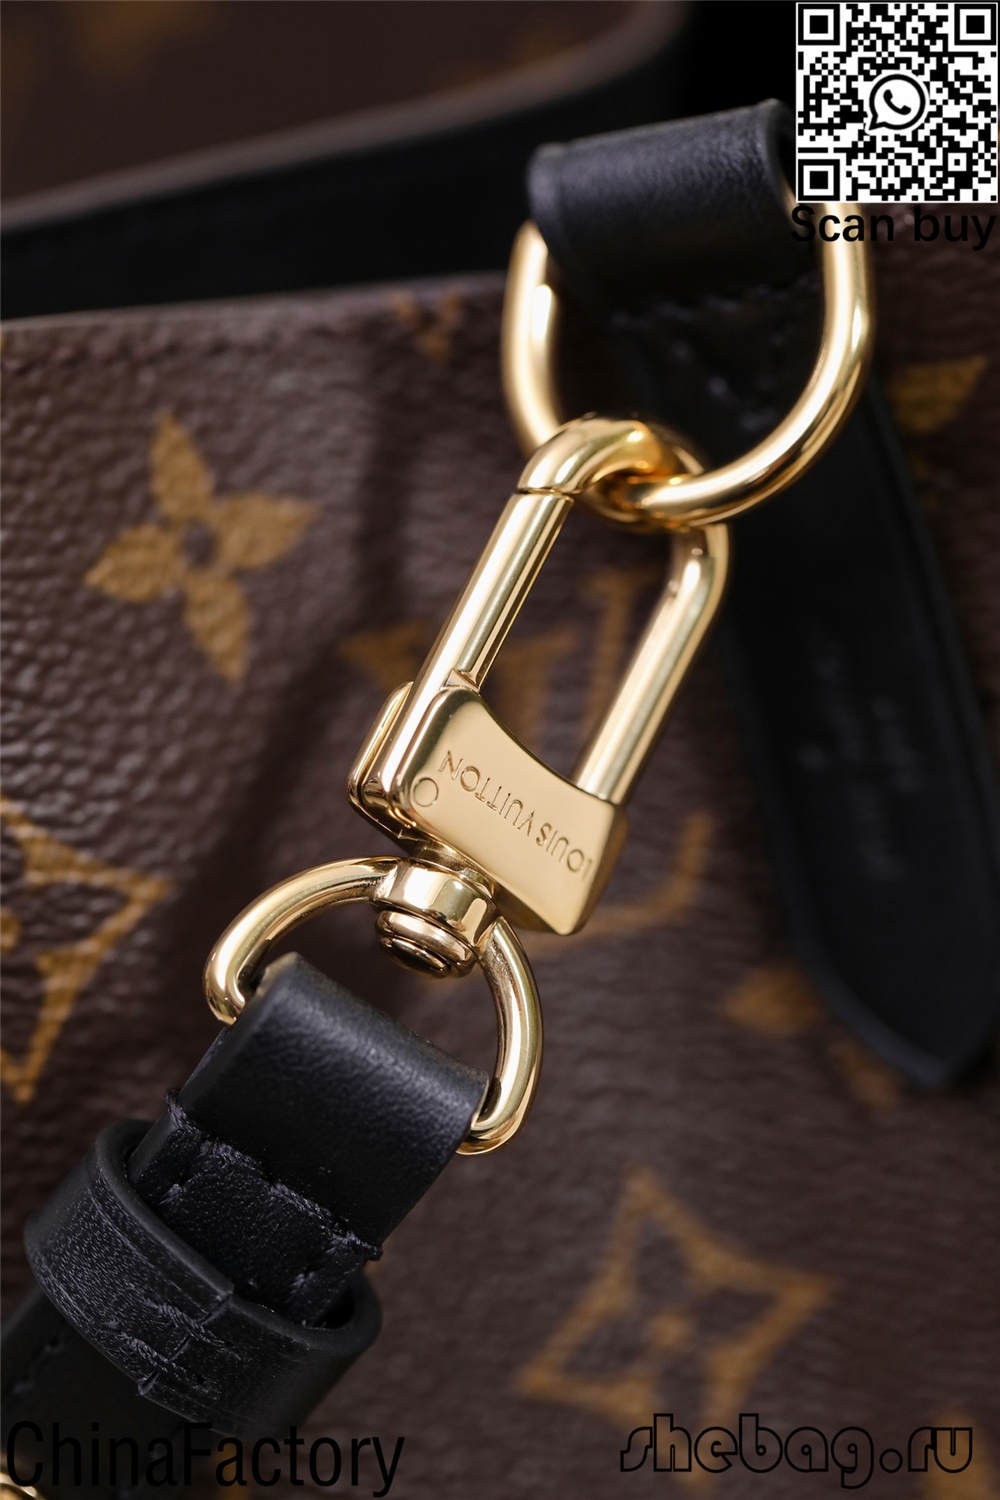 Charm louis vuitton replica bag China buy (ล่าสุด 2022) - ร้านค้าออนไลน์กระเป๋าปลอม Louis Vuitton คุณภาพดีที่สุด ออกแบบกระเป๋าจำลอง ru